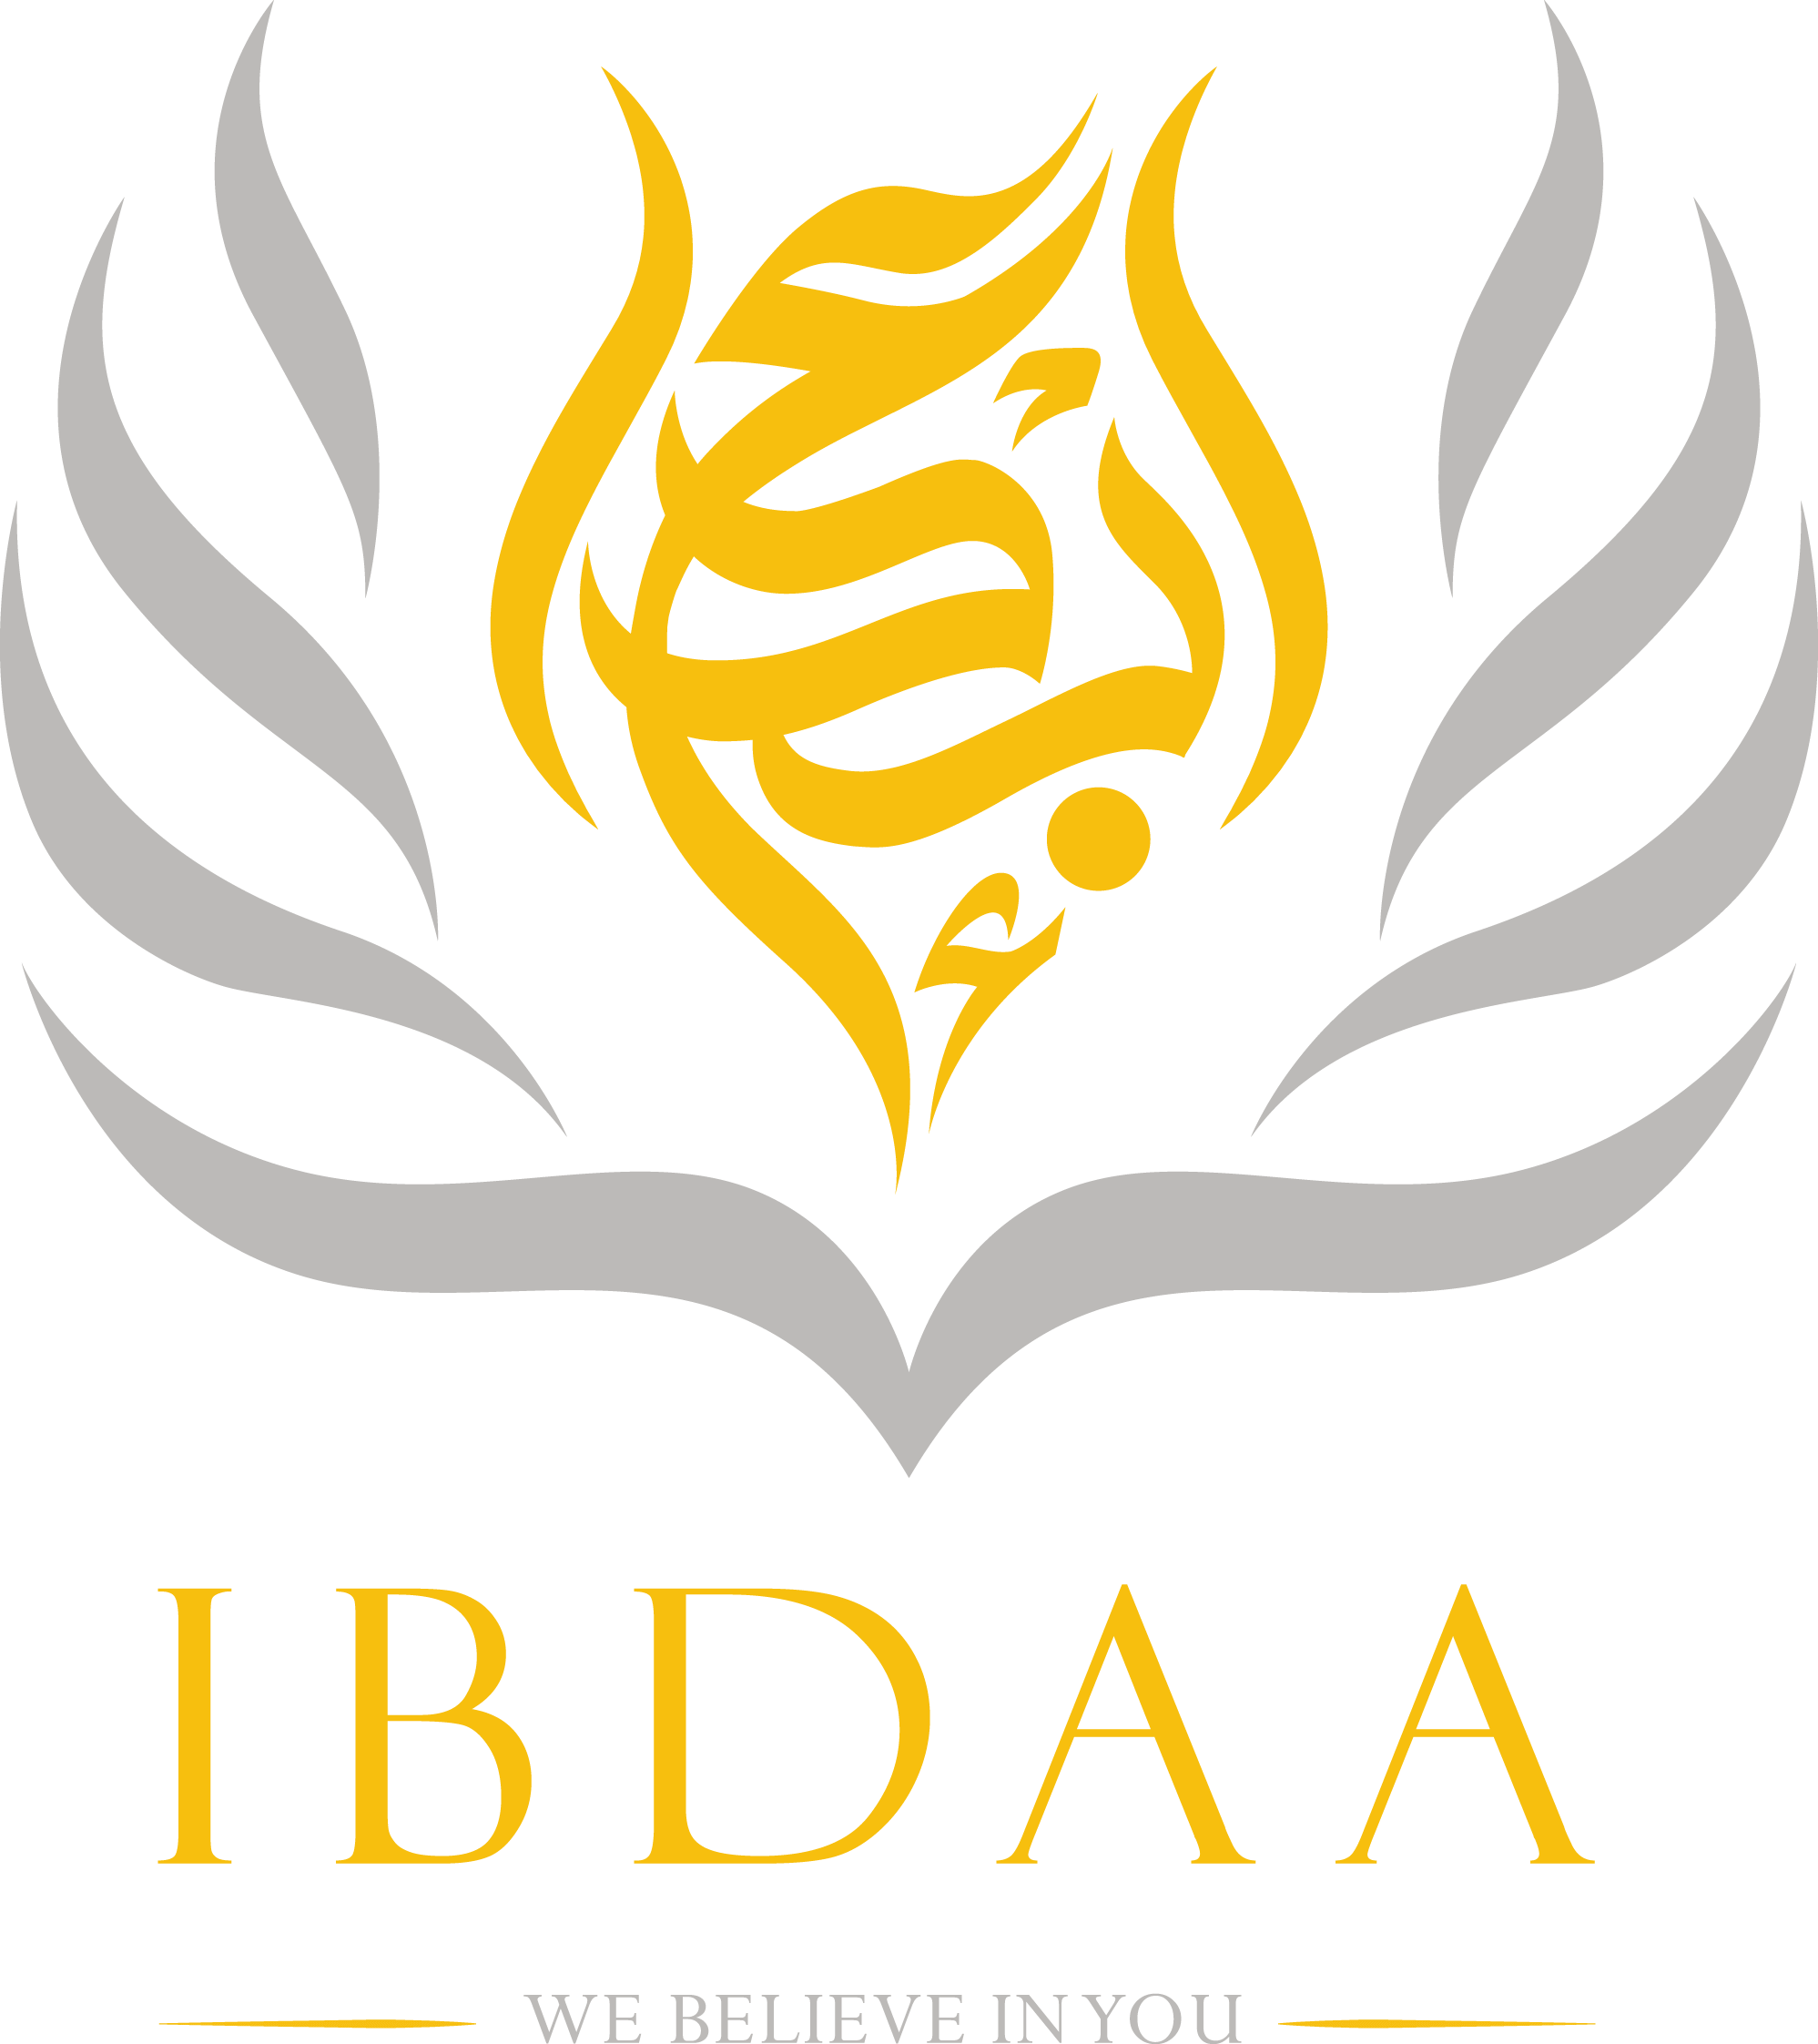 IBDAA logo